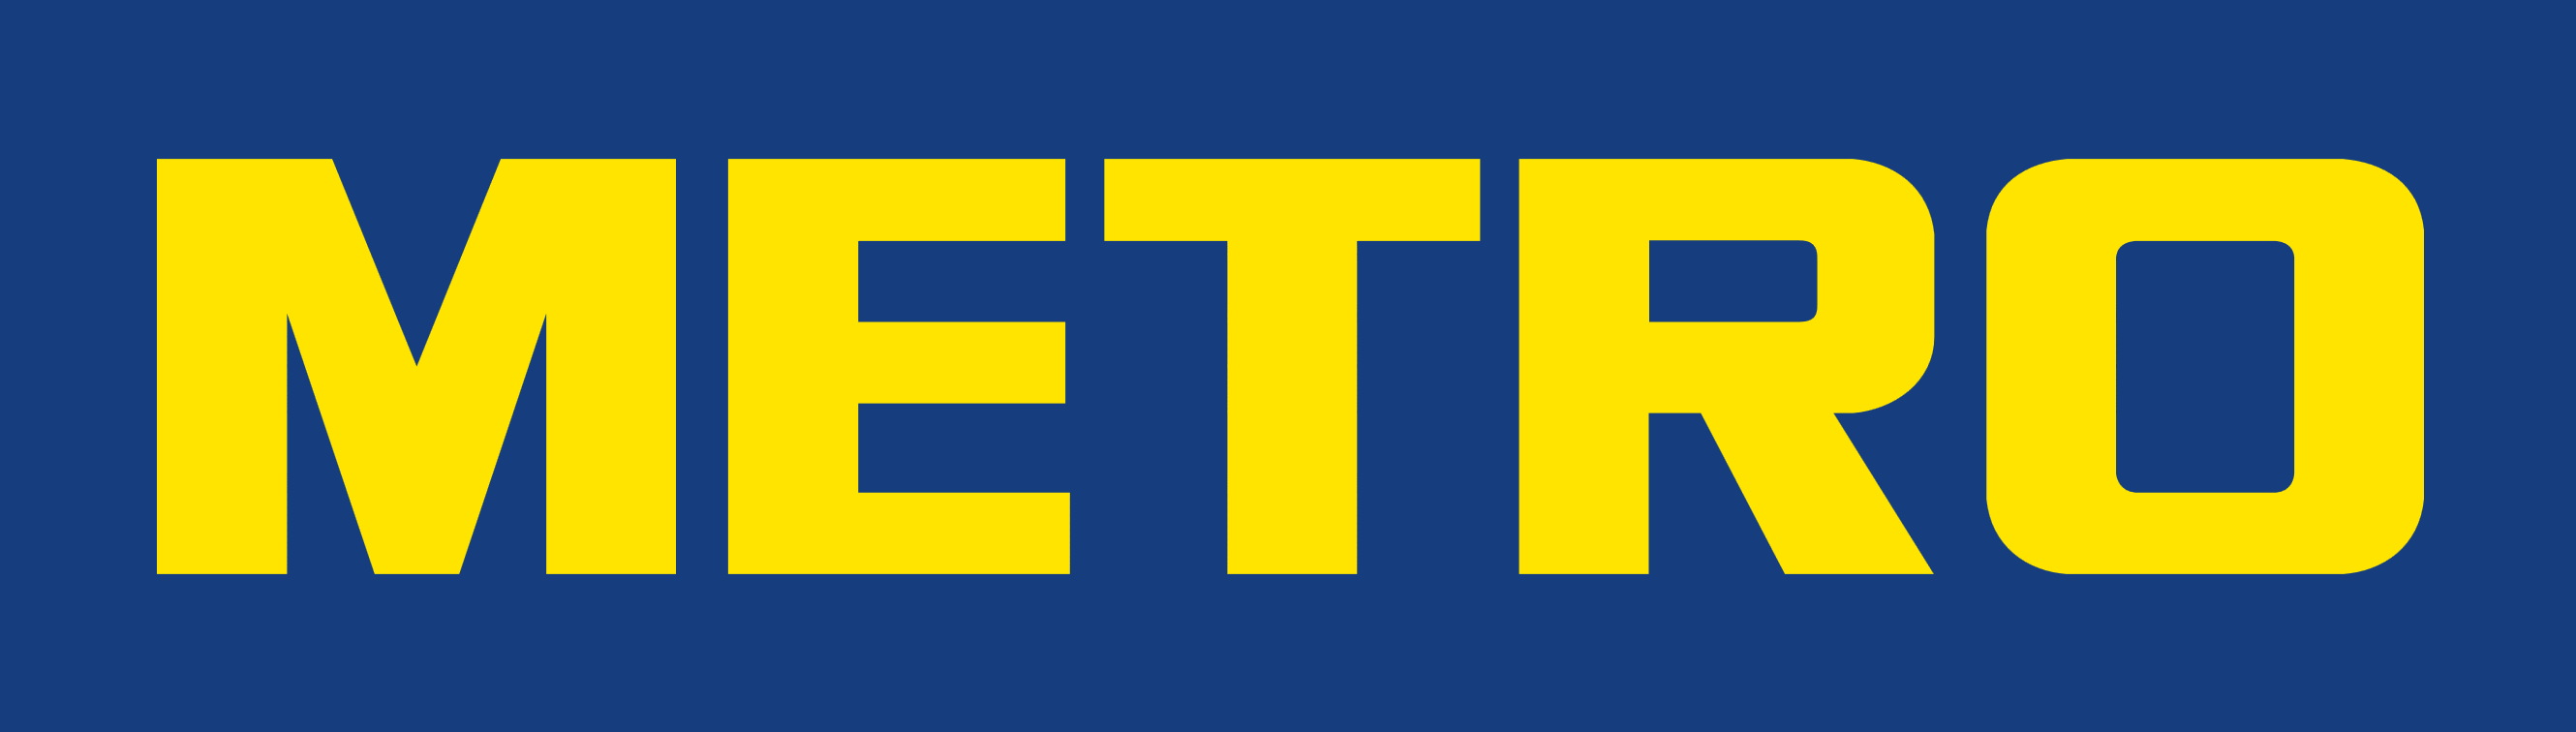 METRO Cash & Carry logo, logotype